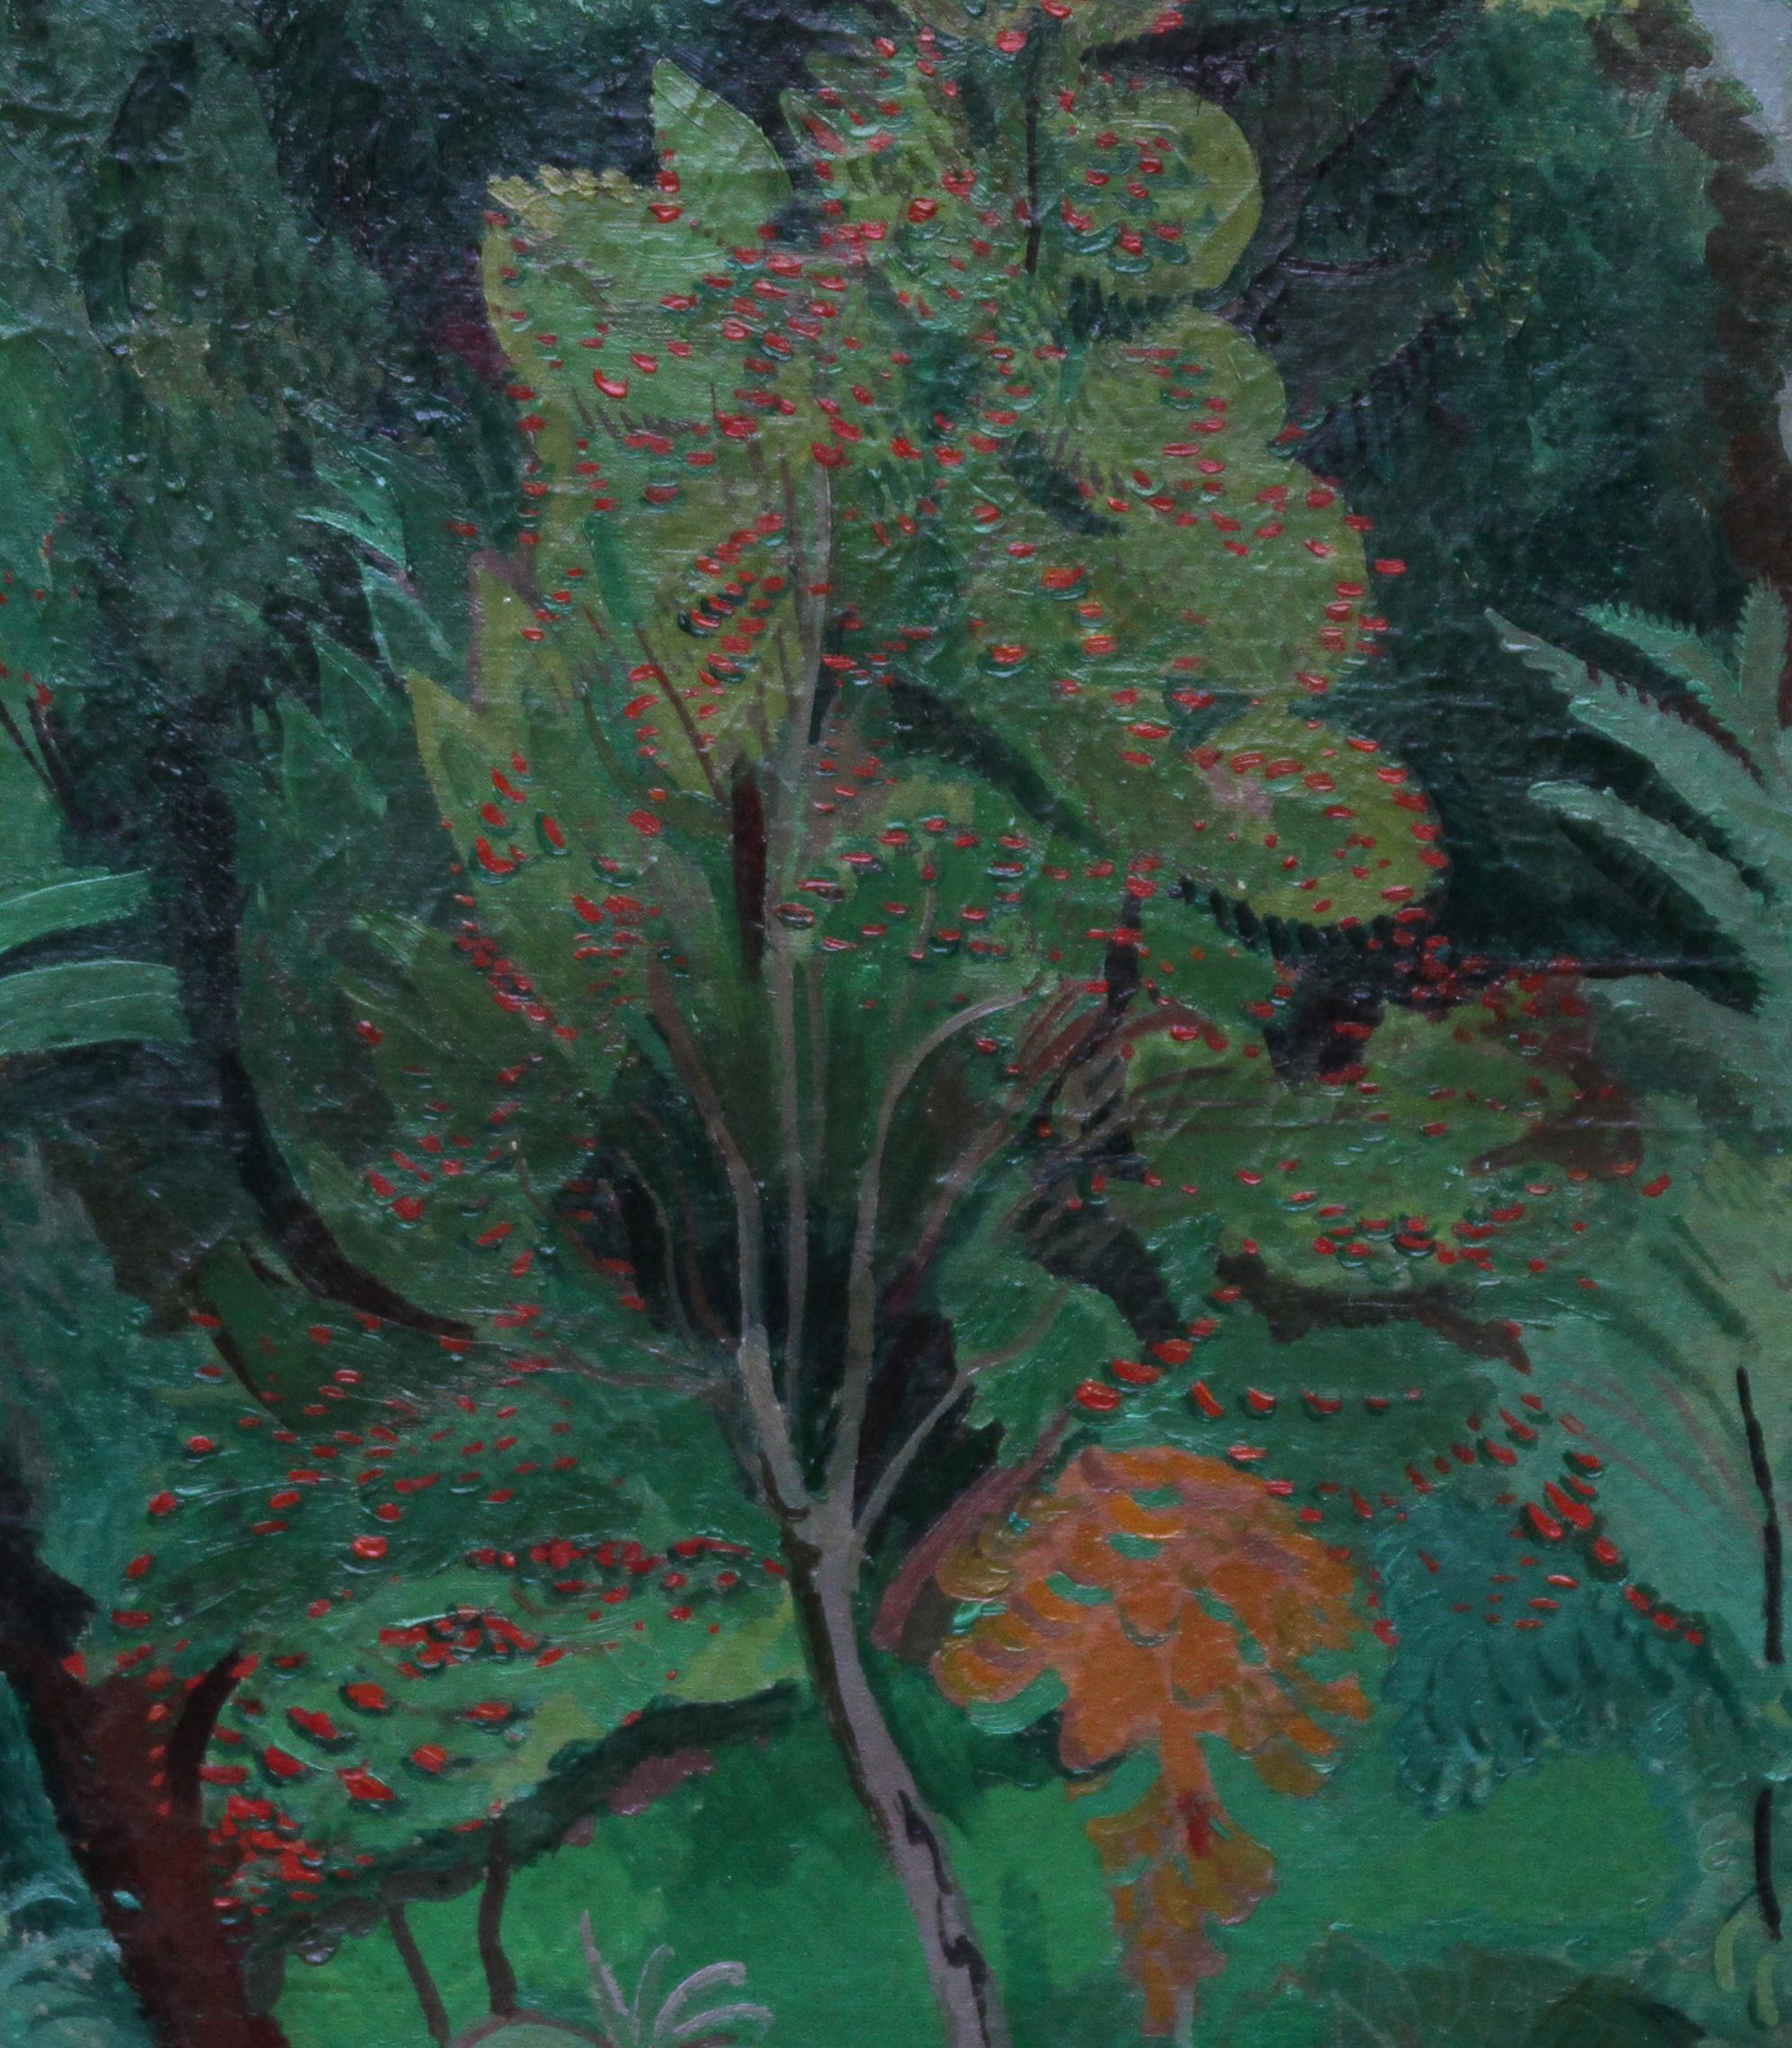 Trees – Postimpressionistisches Landschafts-Ölgemälde der 30er Jahre aus der britischen Moderne (Post-Impressionismus), Painting, von Duncan Grant (circle)